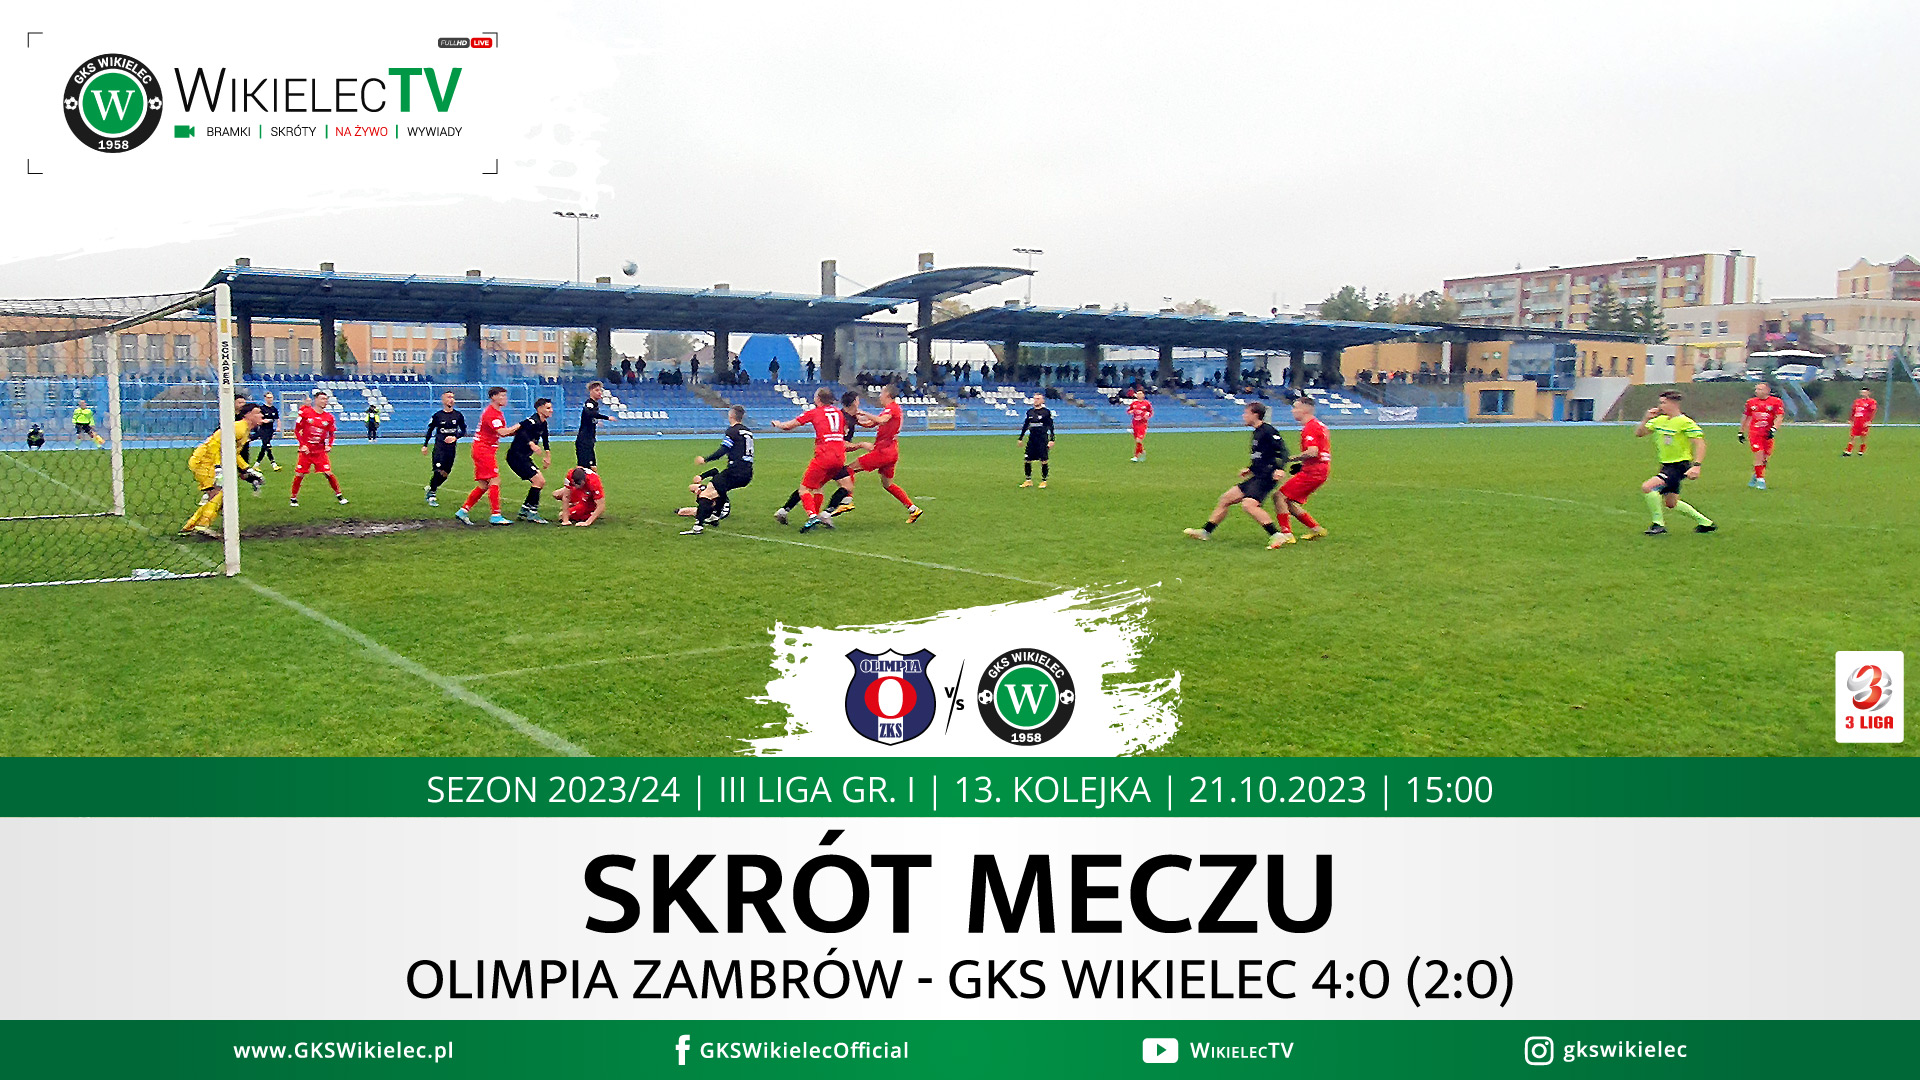 WikielecTV: Skrót meczu Olimpia Zambrów - GKS Wikielec 4:0 (2:0)